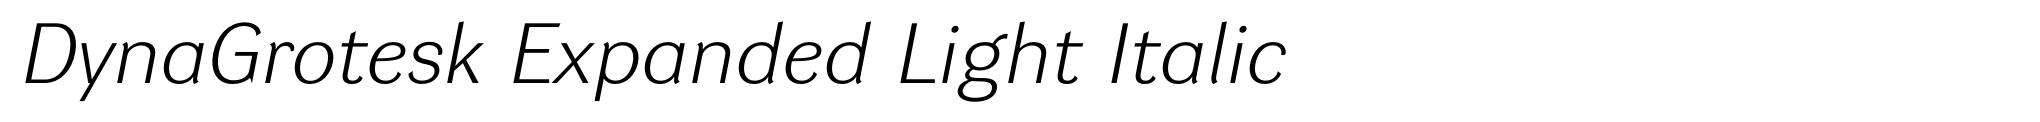 DynaGrotesk Expanded Light Italic image